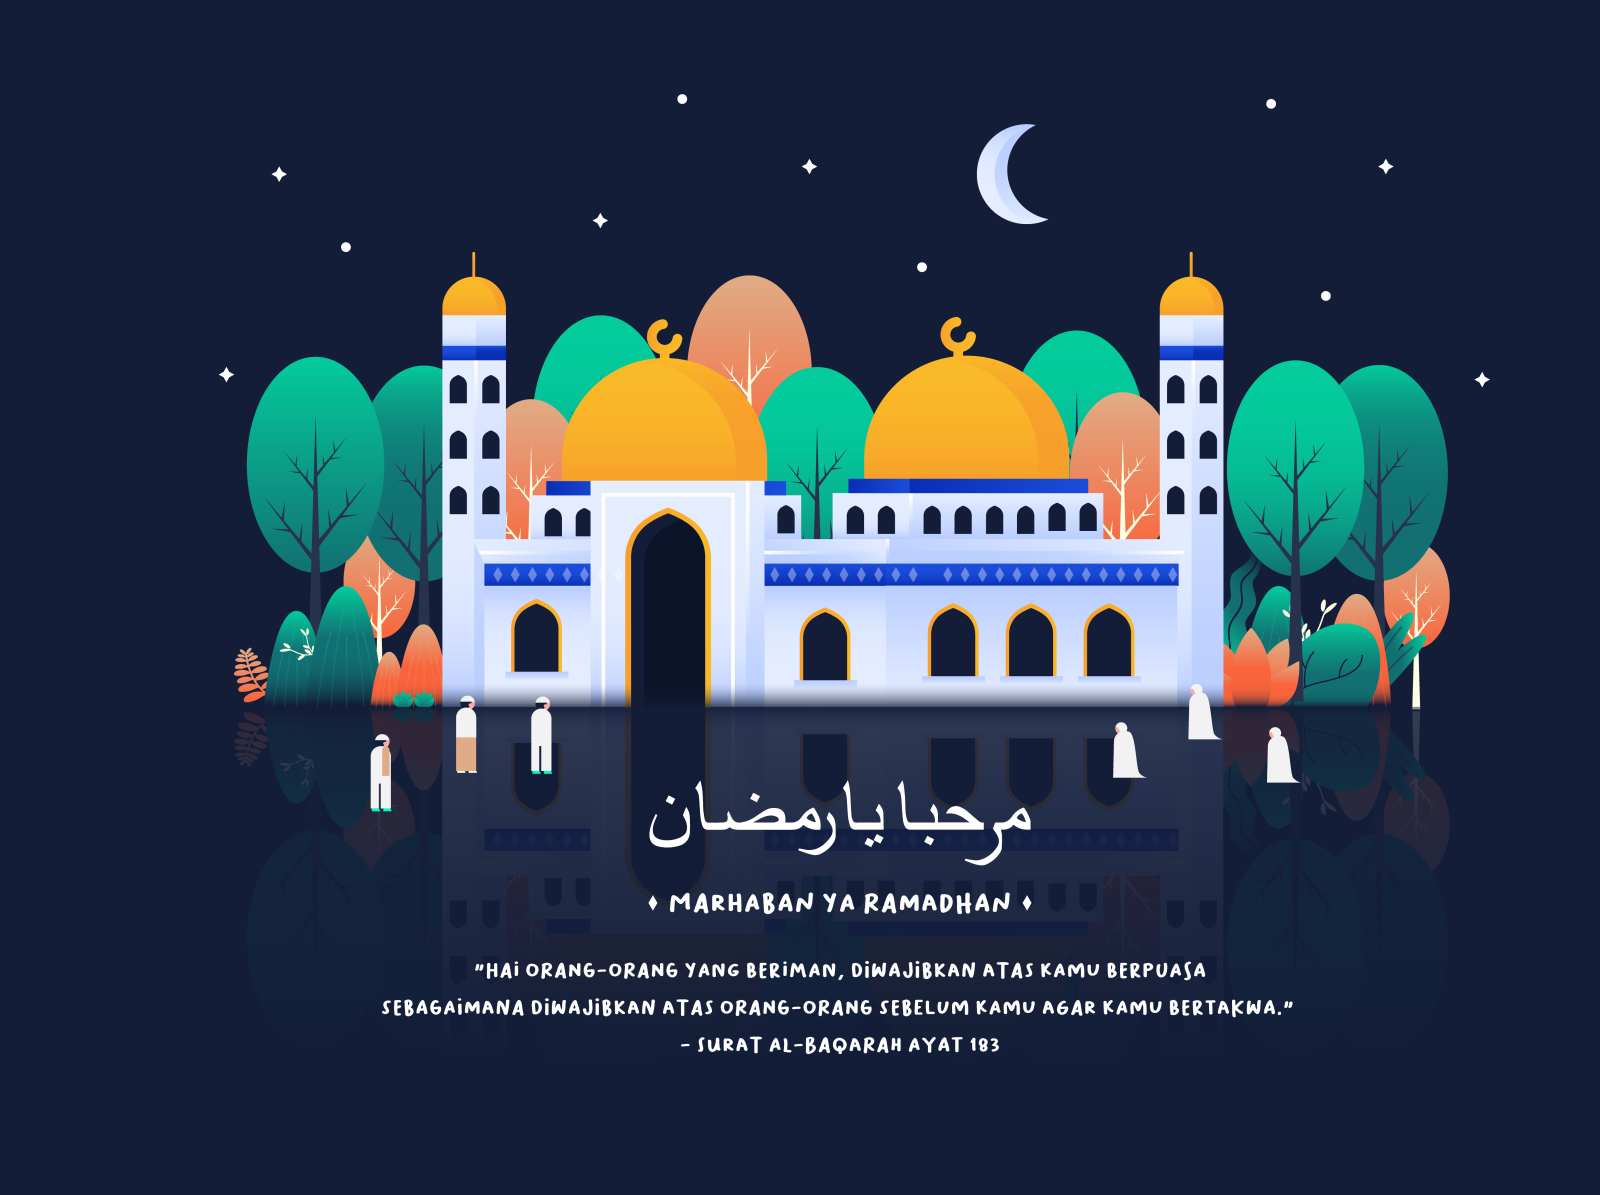  marhaban  ya  ramadhan  by aliffajar for noansa on dribbble lihat